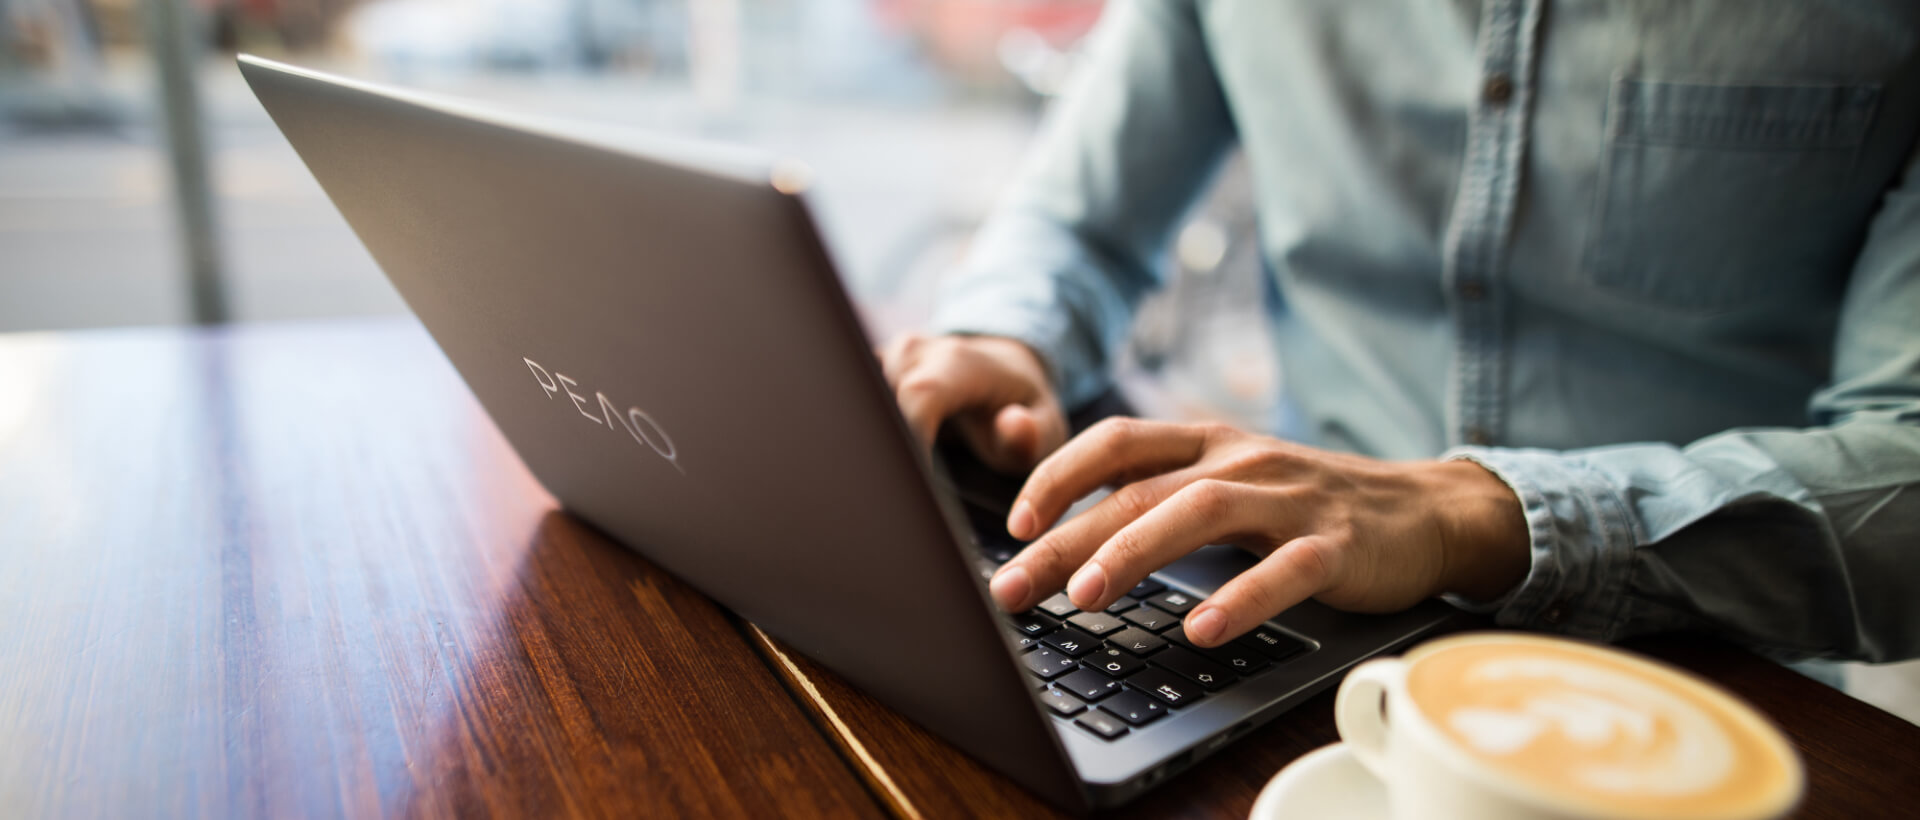 Homem jovem a escrever num portátil da PEAQ, ao lado uma chávena de café cheia, sentado num café, vista de perto, panorama